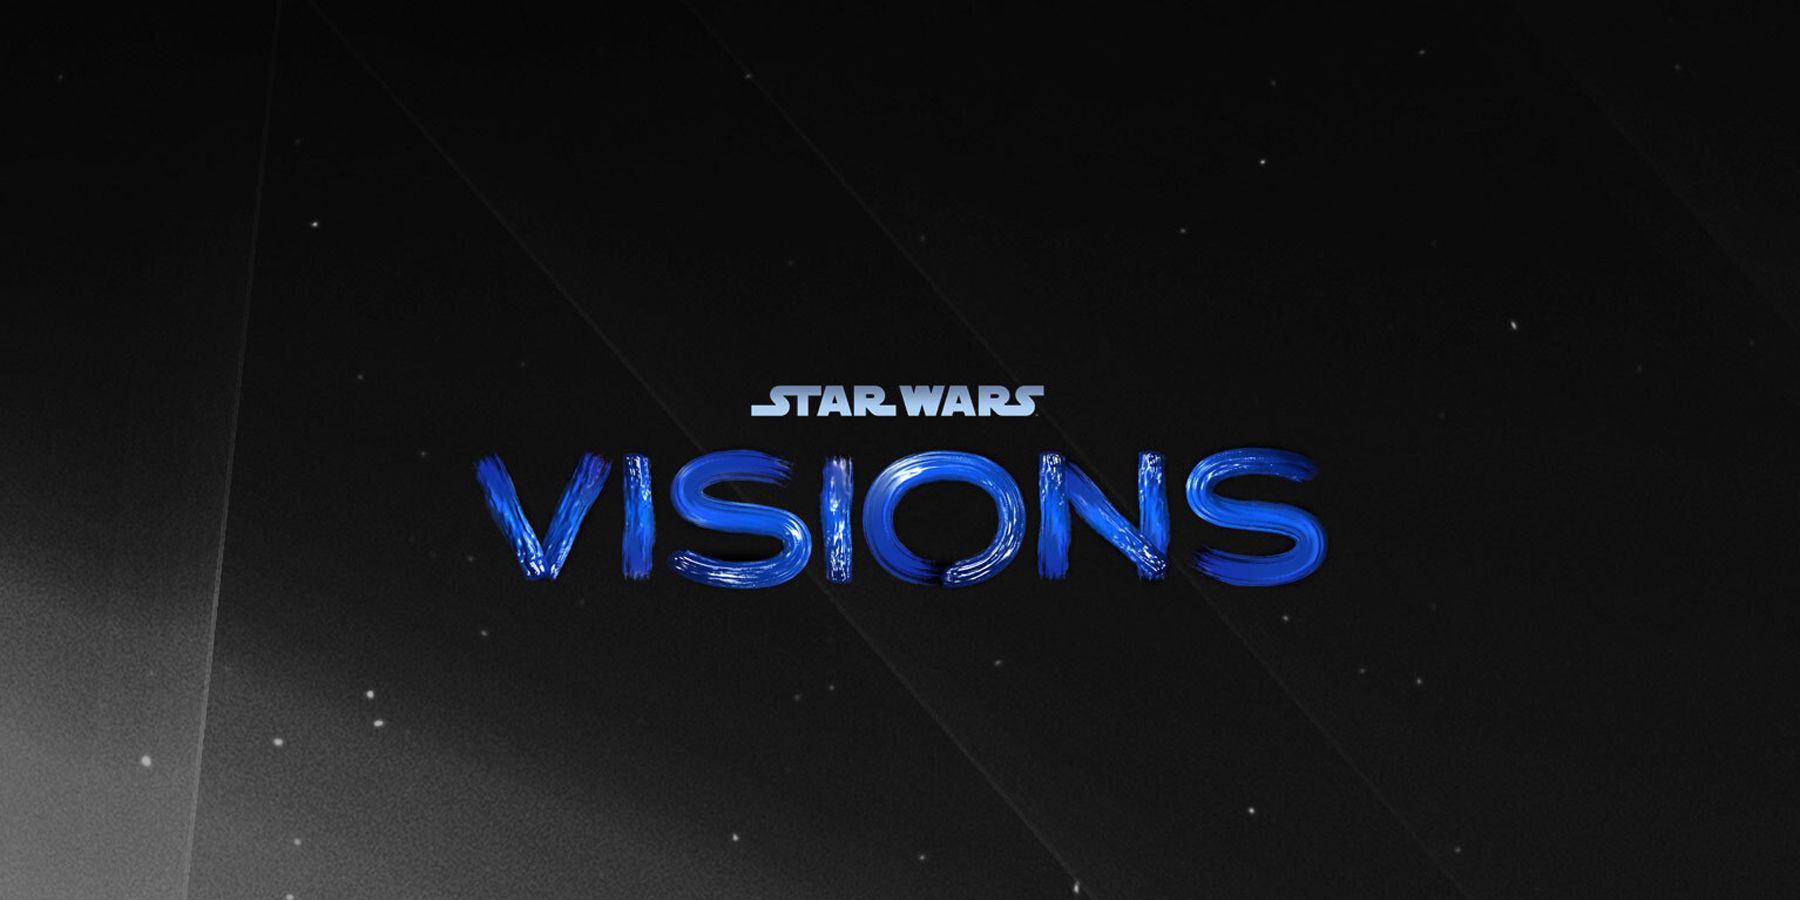 Logotipo das visões de Star Wars